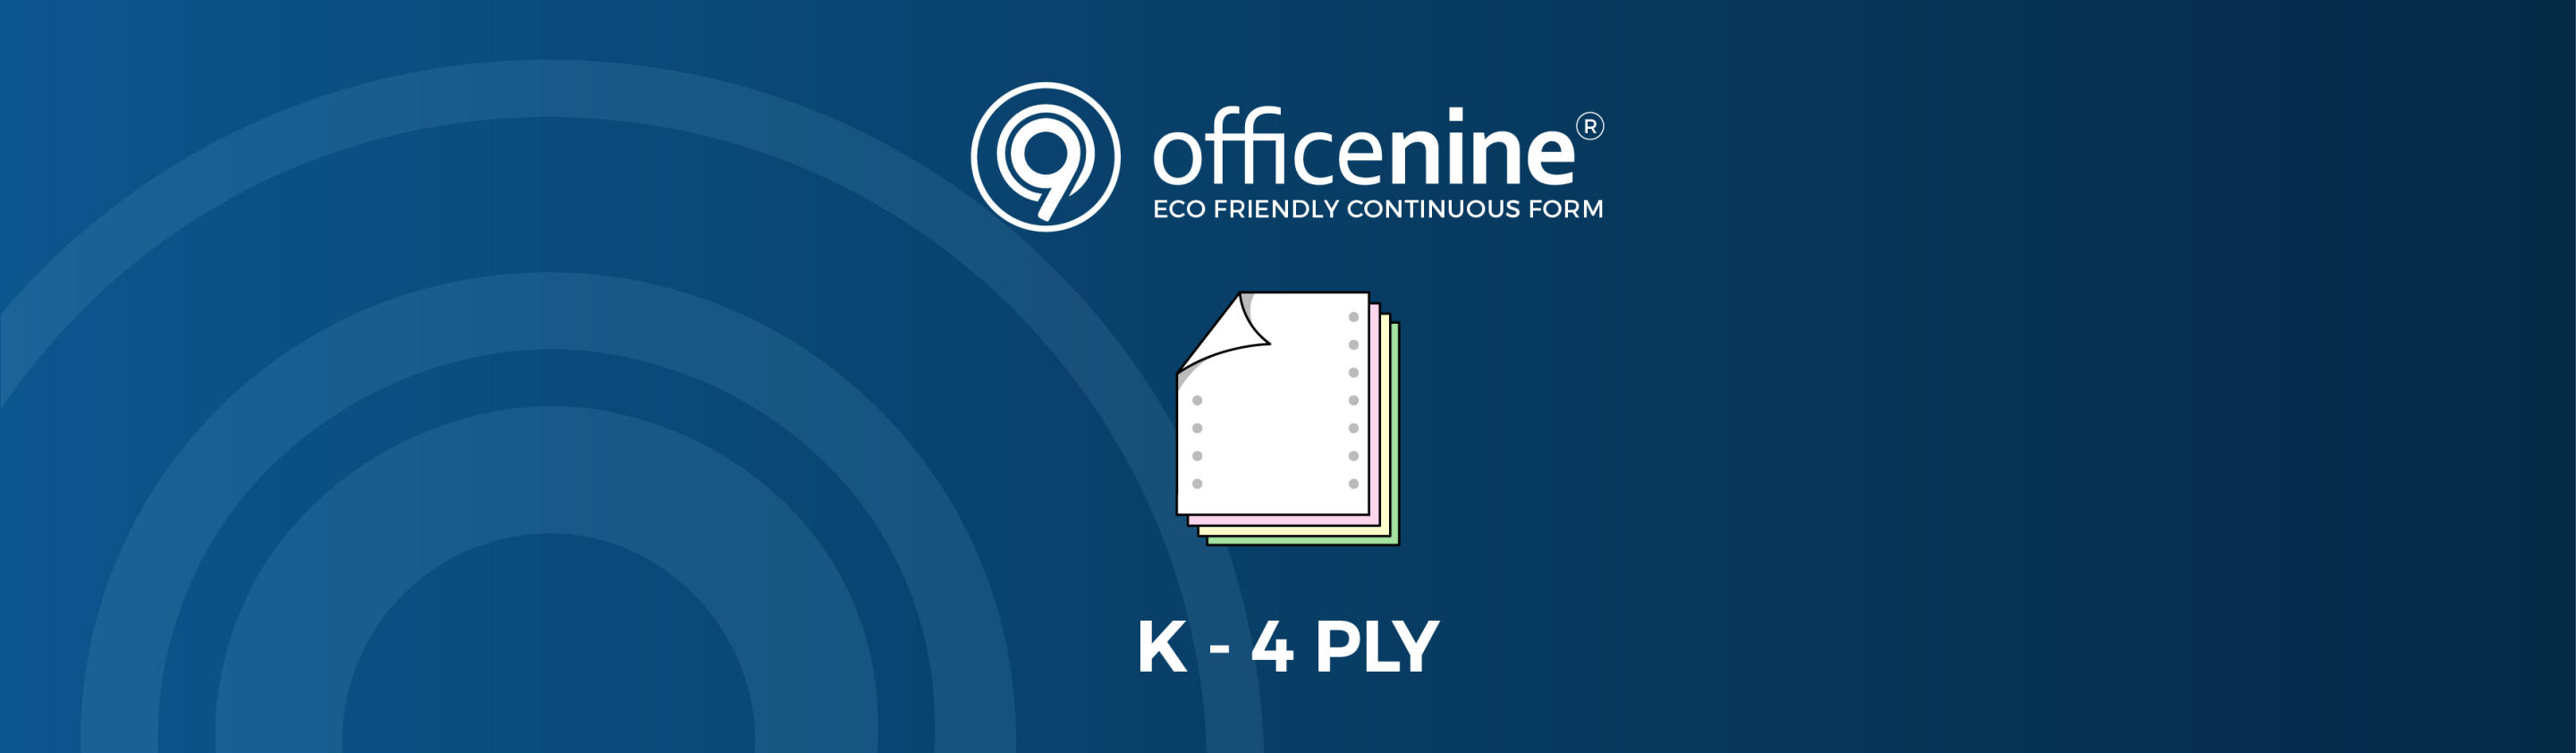 K-4-PLY Officenine